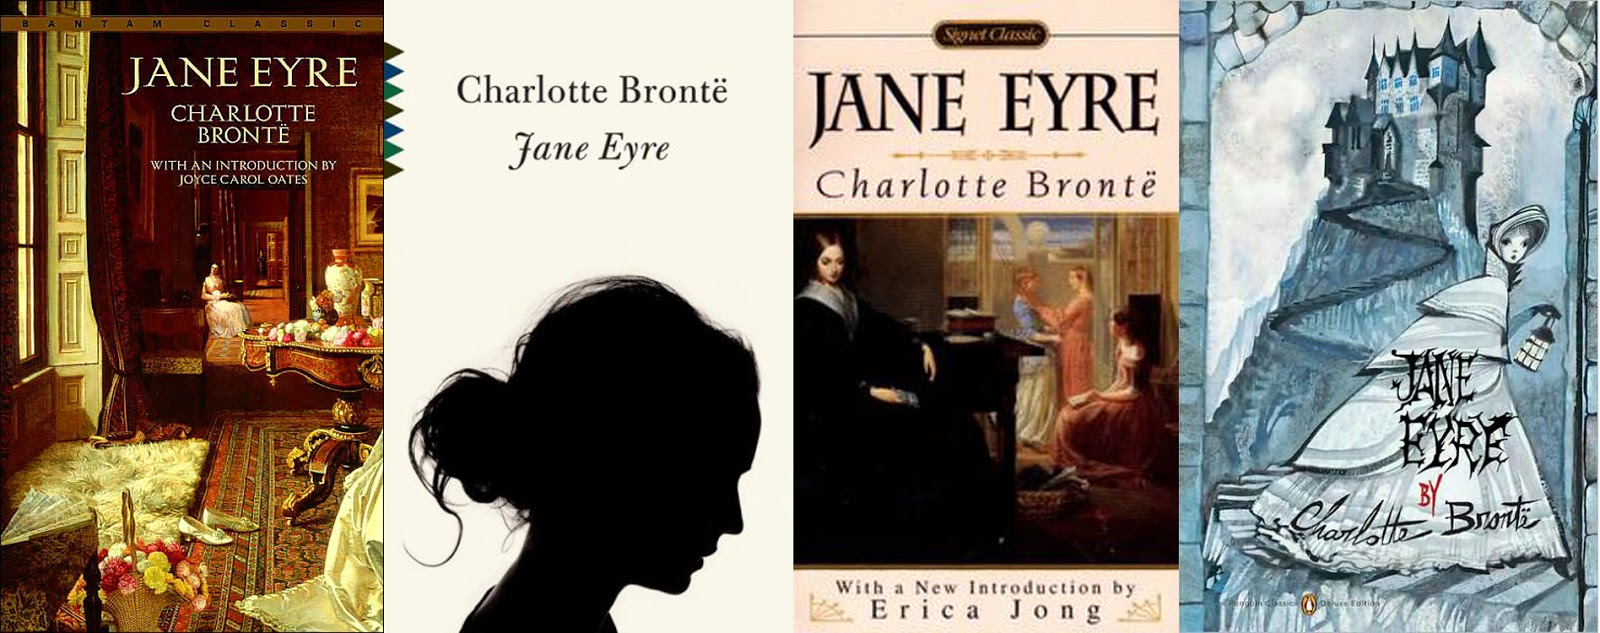 Джейн эйр книга краткое. Jane Eyre by Charlotte Bronte. Bronte с. "Jane Eyre". Джен Эйр гувернантка книга.